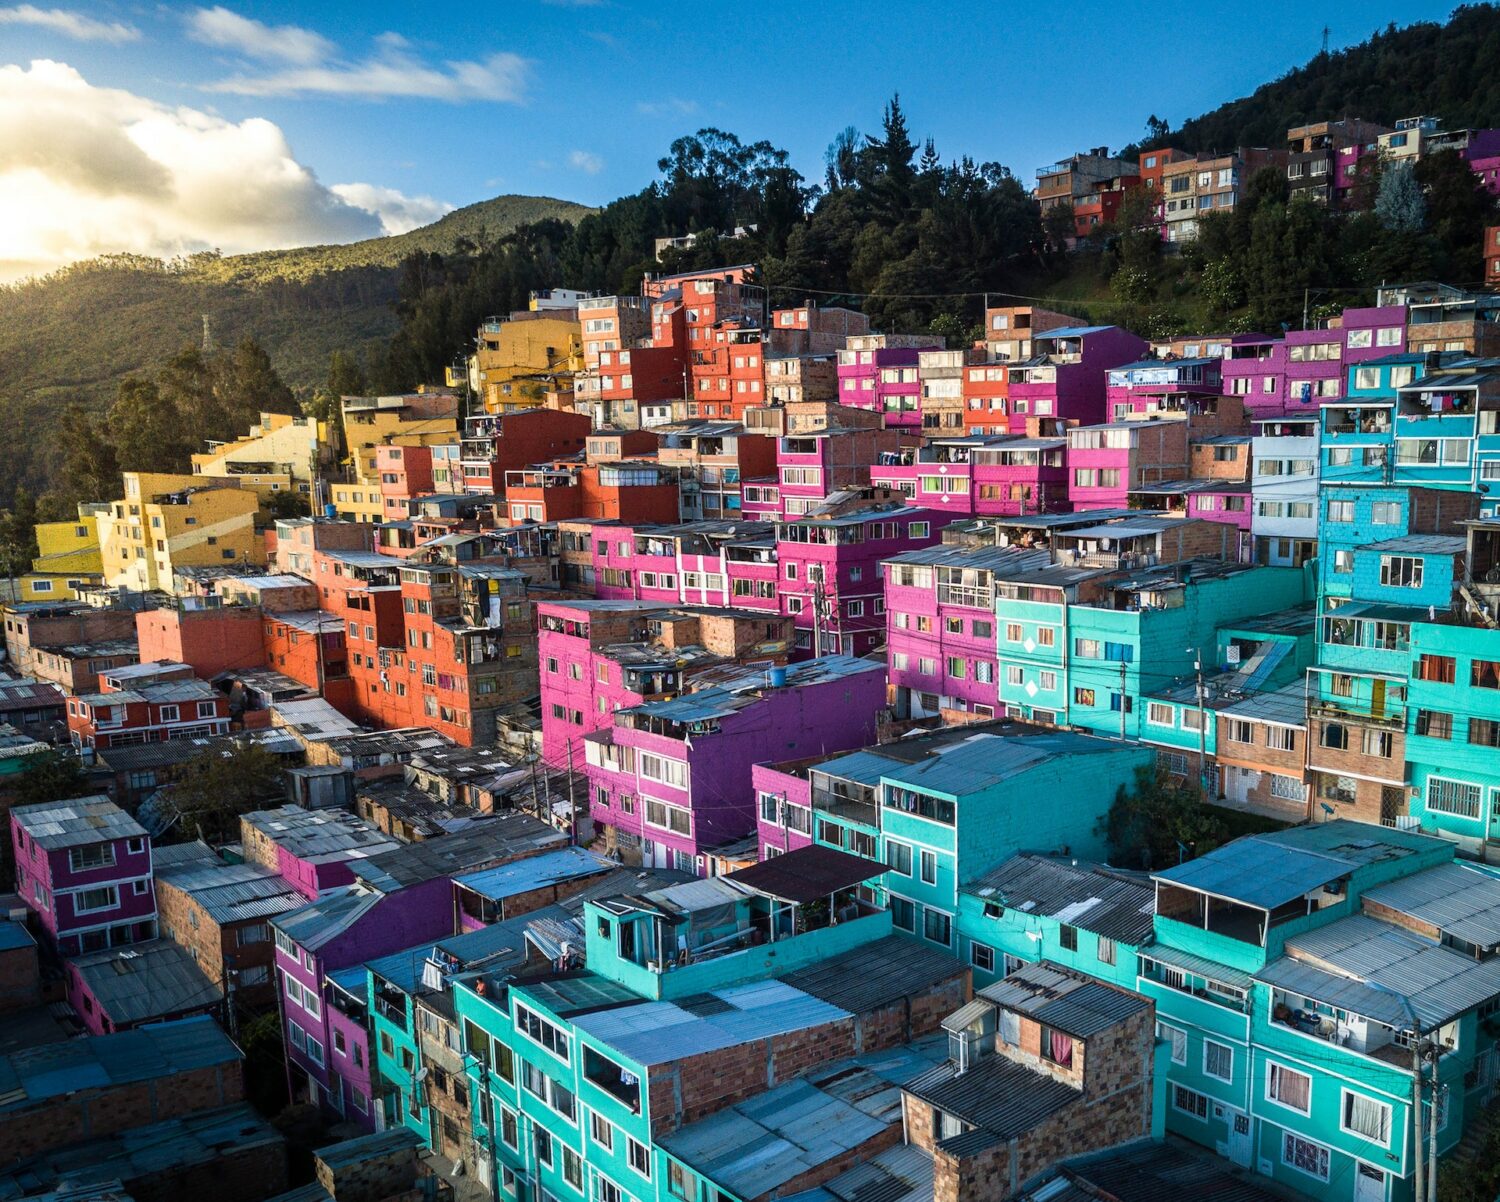 Diversas casas das cores azul, rosa, laranja e amarelo ao longo de uma colina. Do lado esquerdo podemos ver algumas nuvens acima de vegetação, e o céu é azul. - Foto: Enrique Hoyos via Pexels